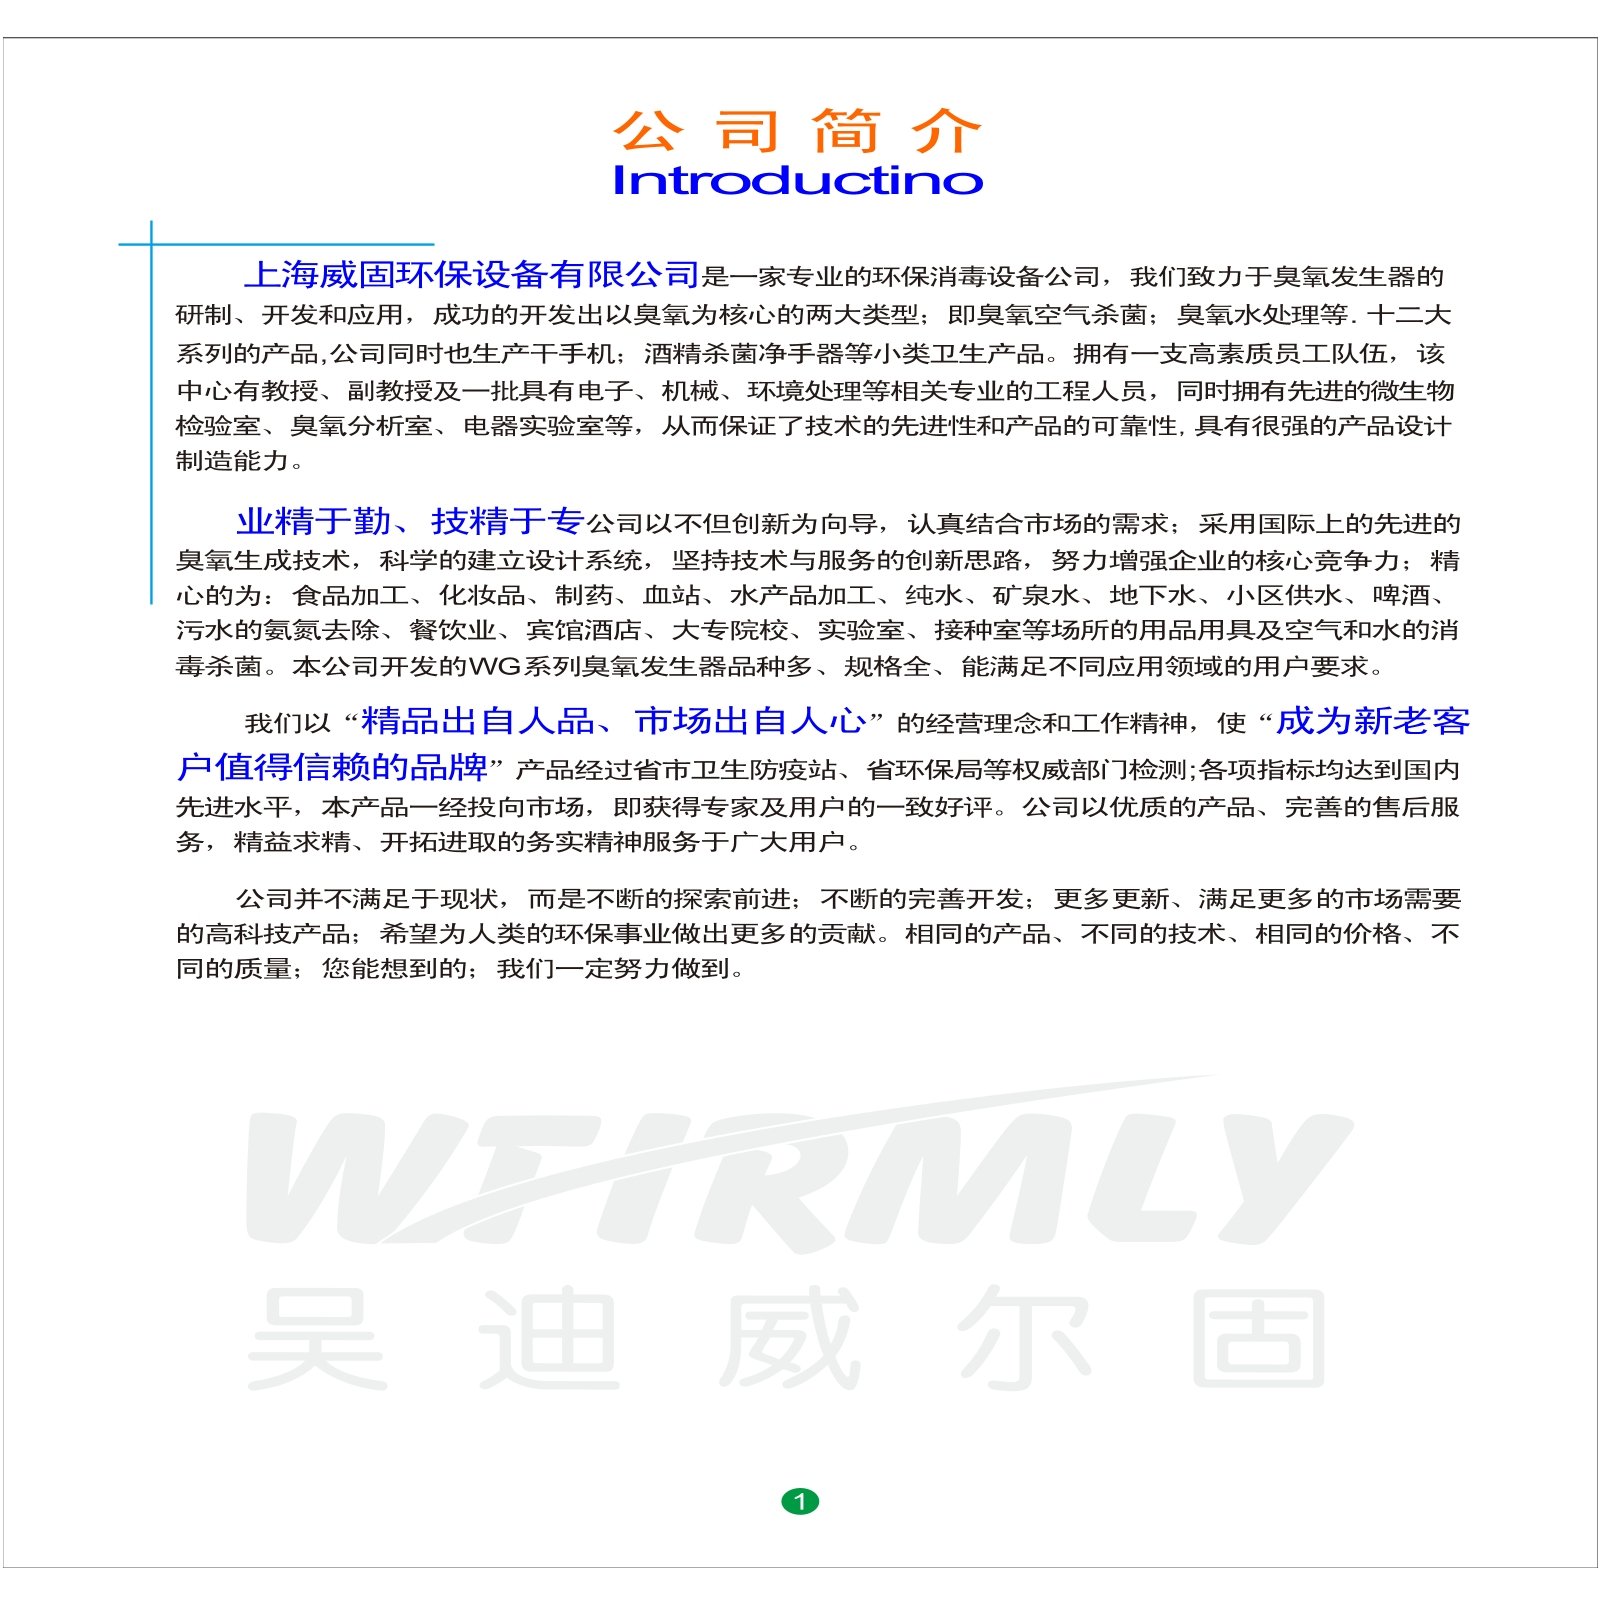 上海威固环保设备有限公司产品样册